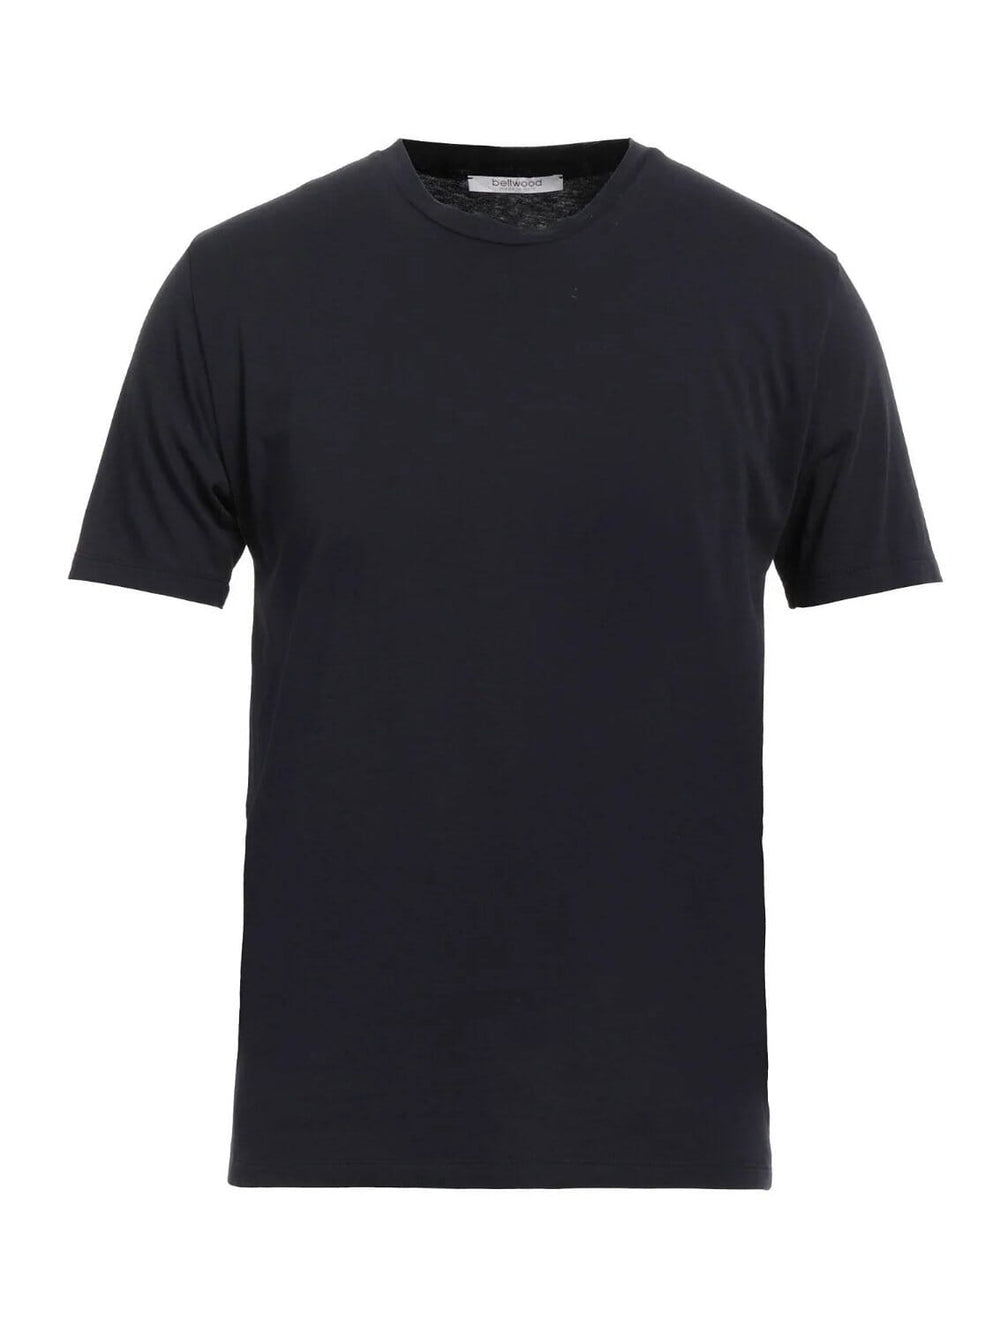 BELLWOOD - T-Shirt Navy T-shirts Bellwood 